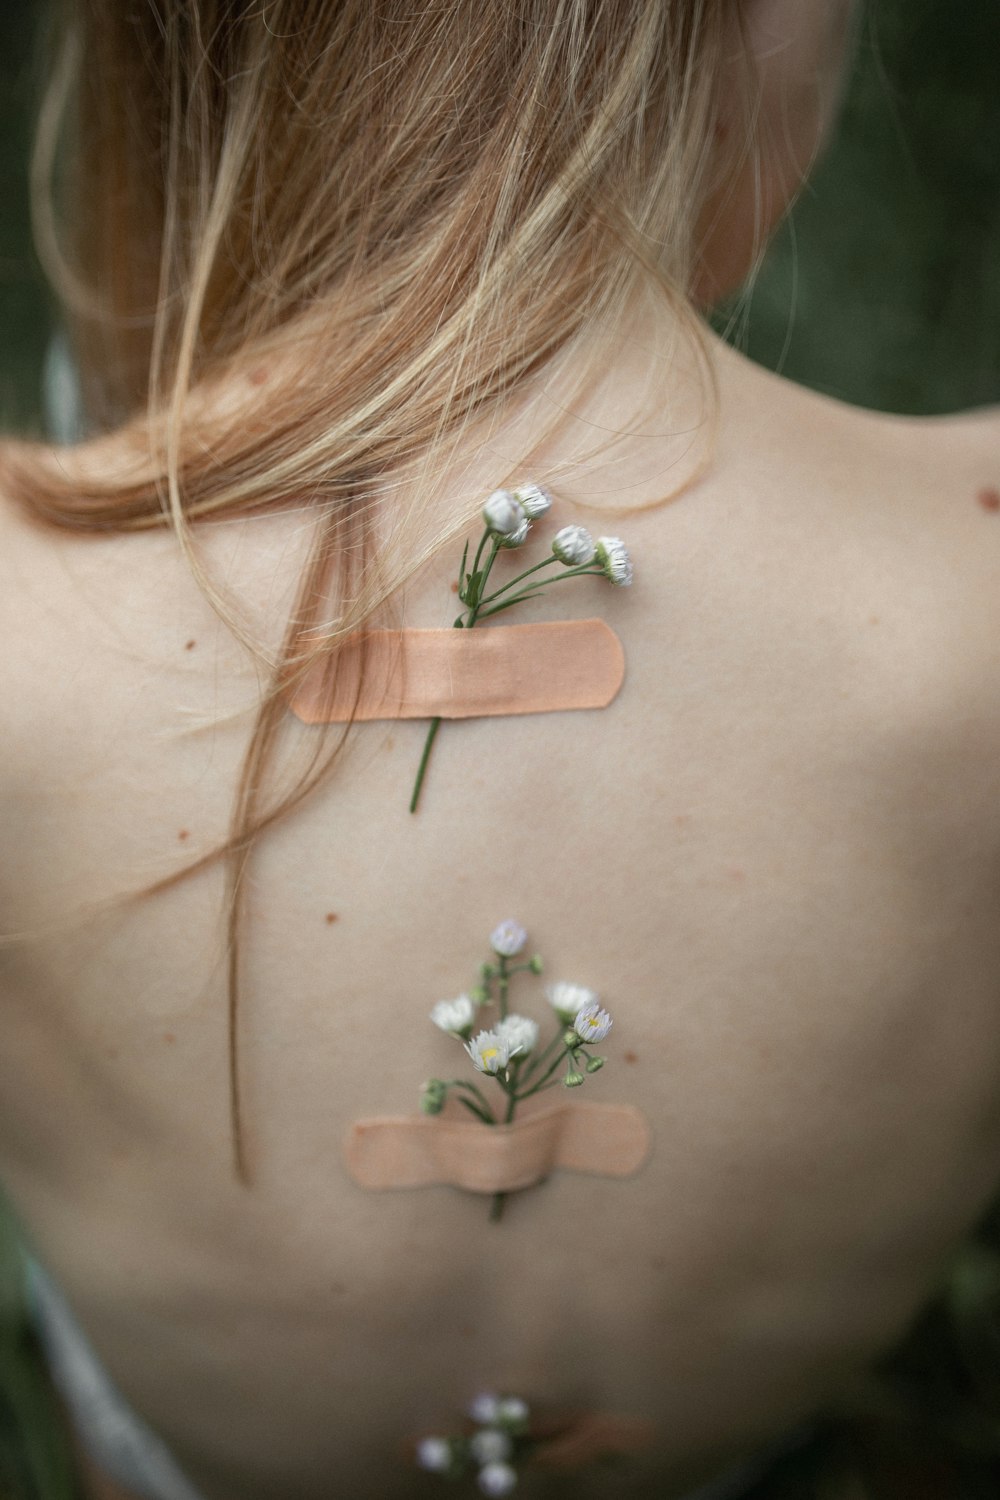 fiori dai petali bianchi conficcati sulla schiena di una donna